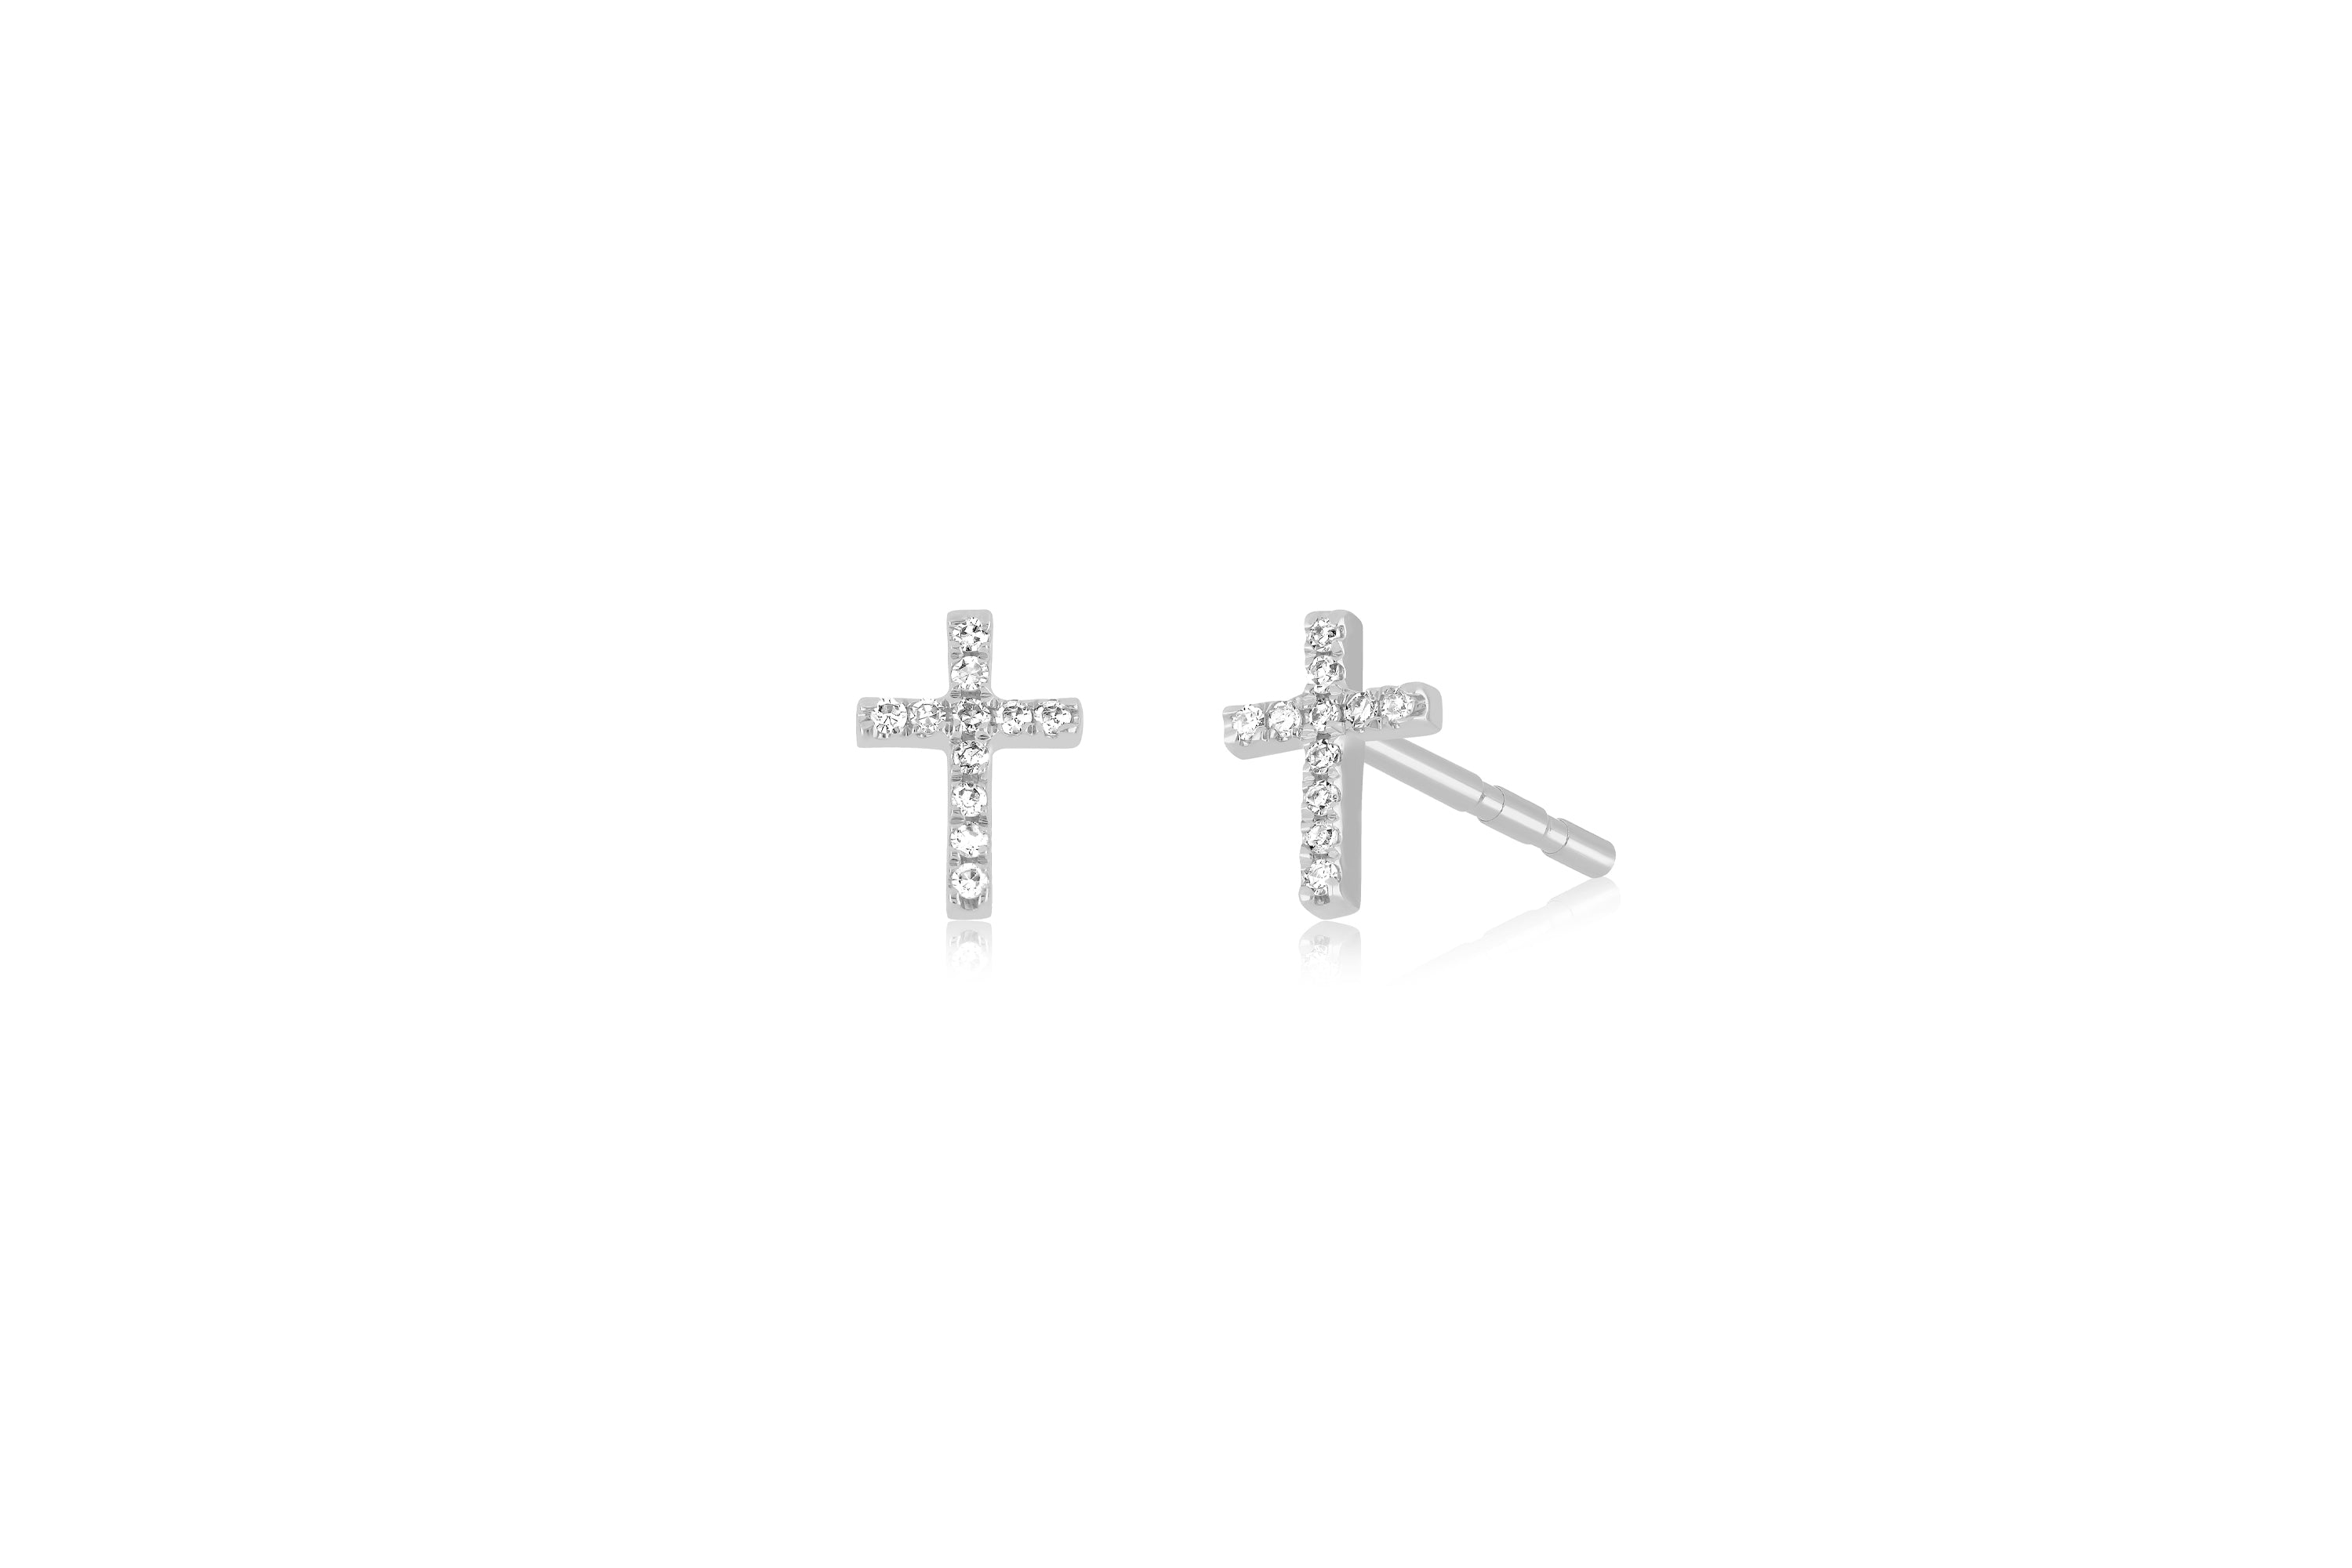 14k Solid Gold Criss Cross Pave Diamond Earrings – FERKOS FJ